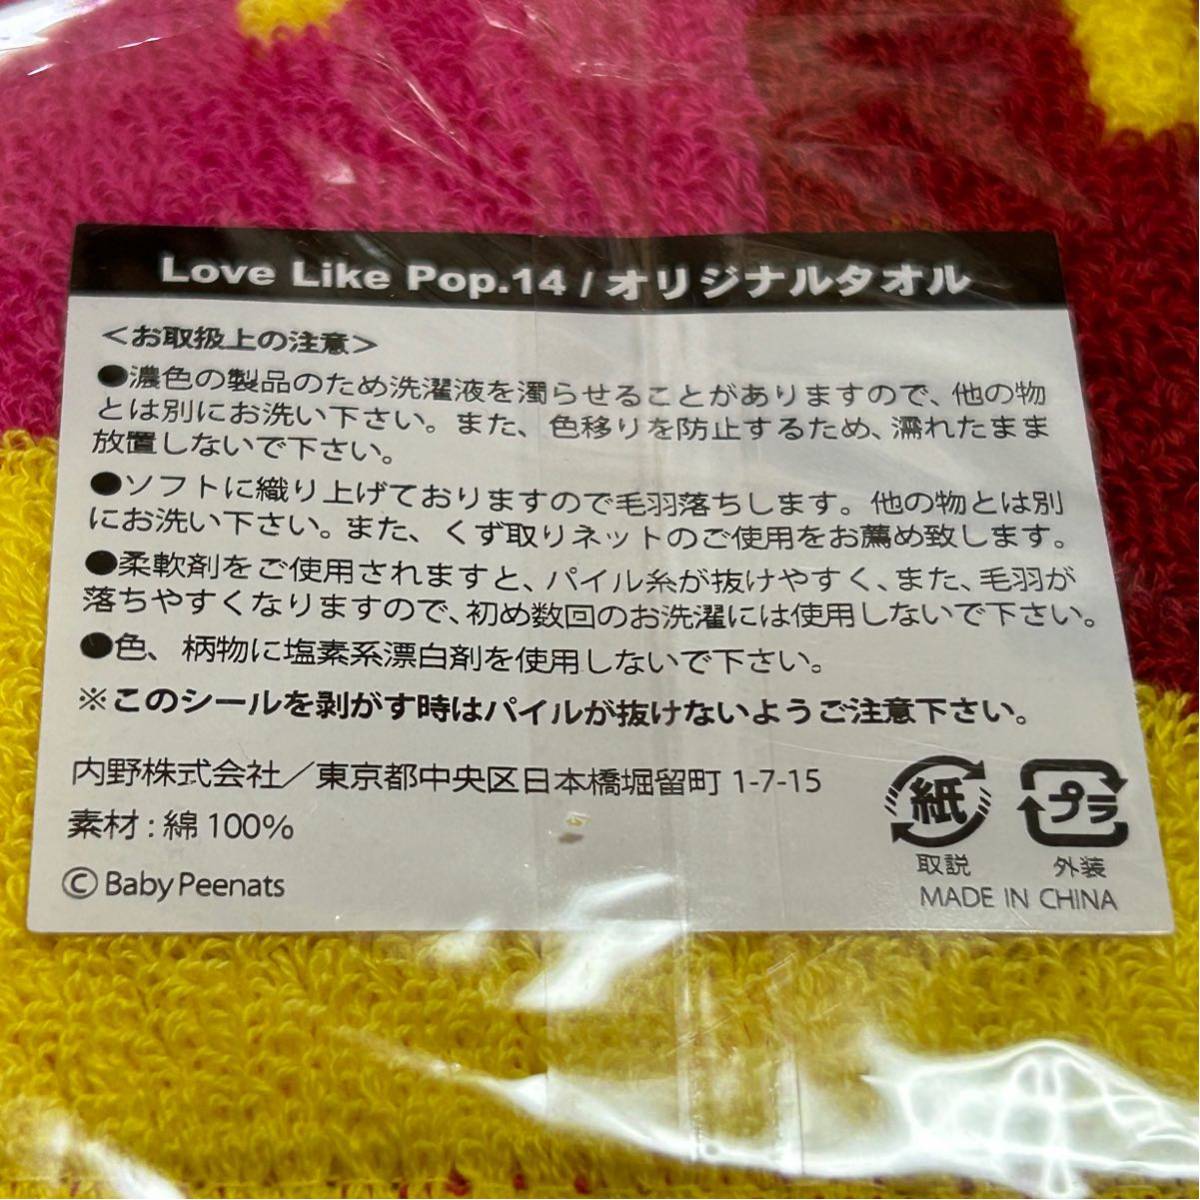 aikoのライブタオル2種セット/ラブライクポップ14/Love Like Pop 14/ツアーグッズ/ツアータオル/aiko/アイコ 